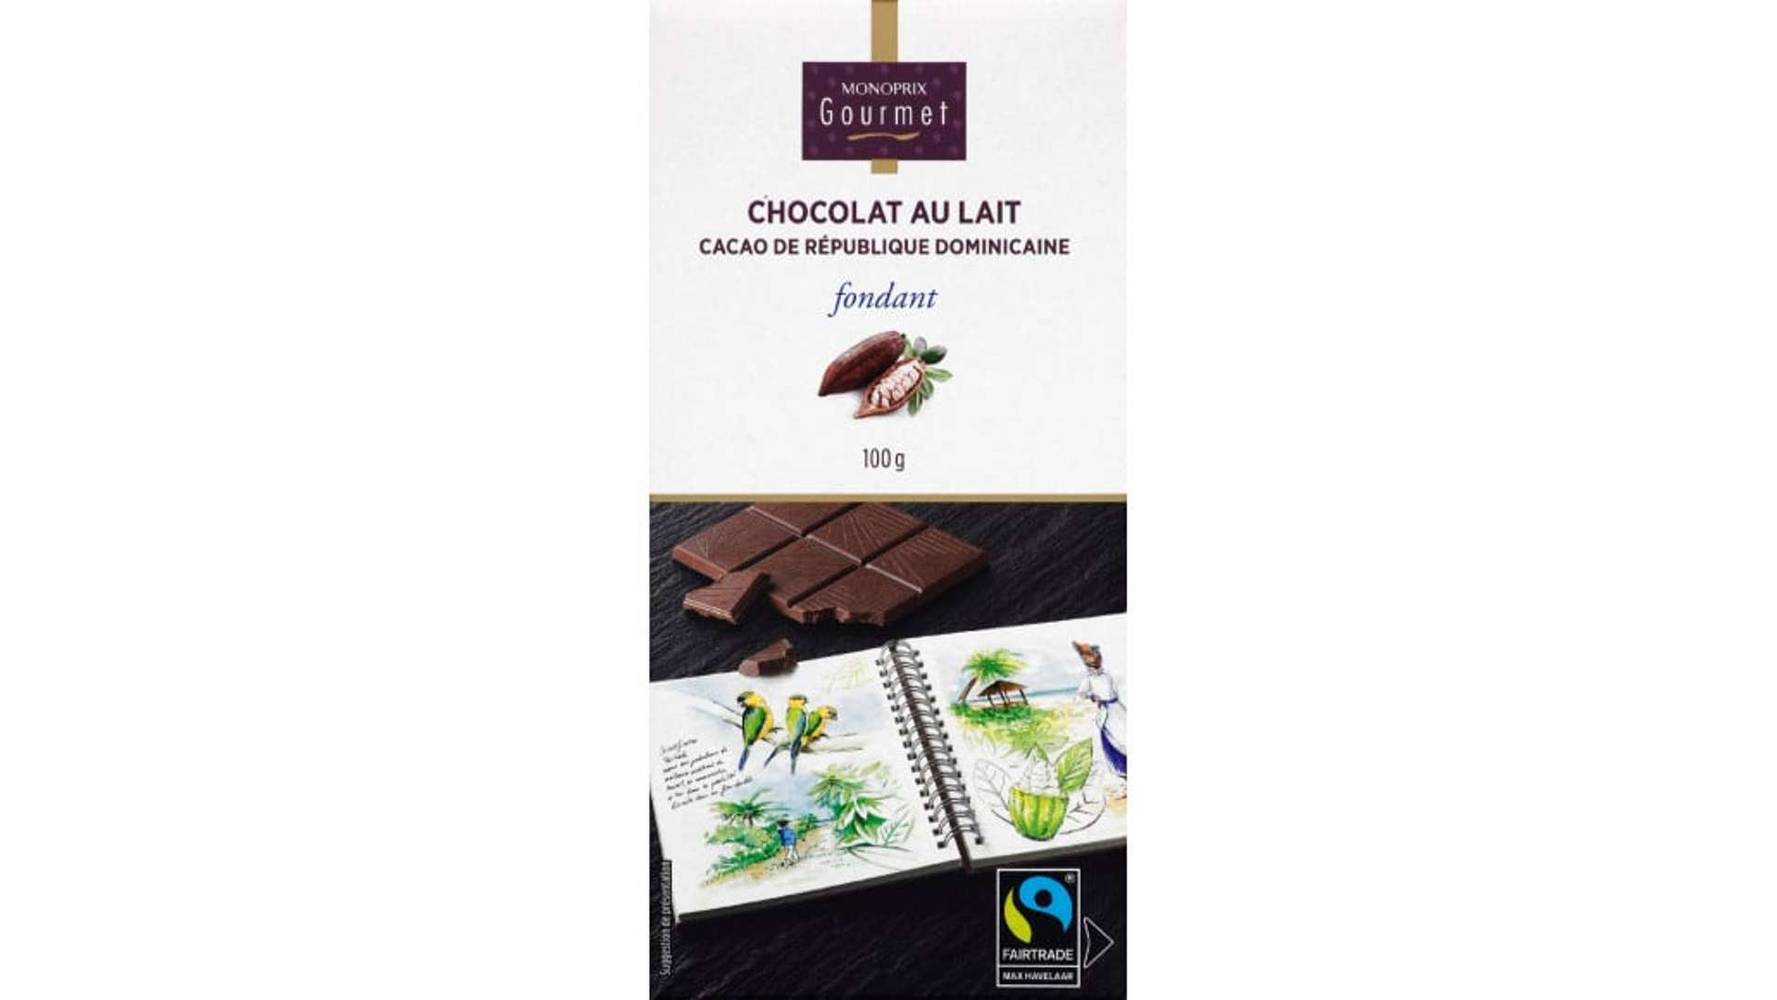 Monoprix Gourmet Chocolat au lait fondant cacao de Saint Domingue, Max Havelaar La tablette de 100g